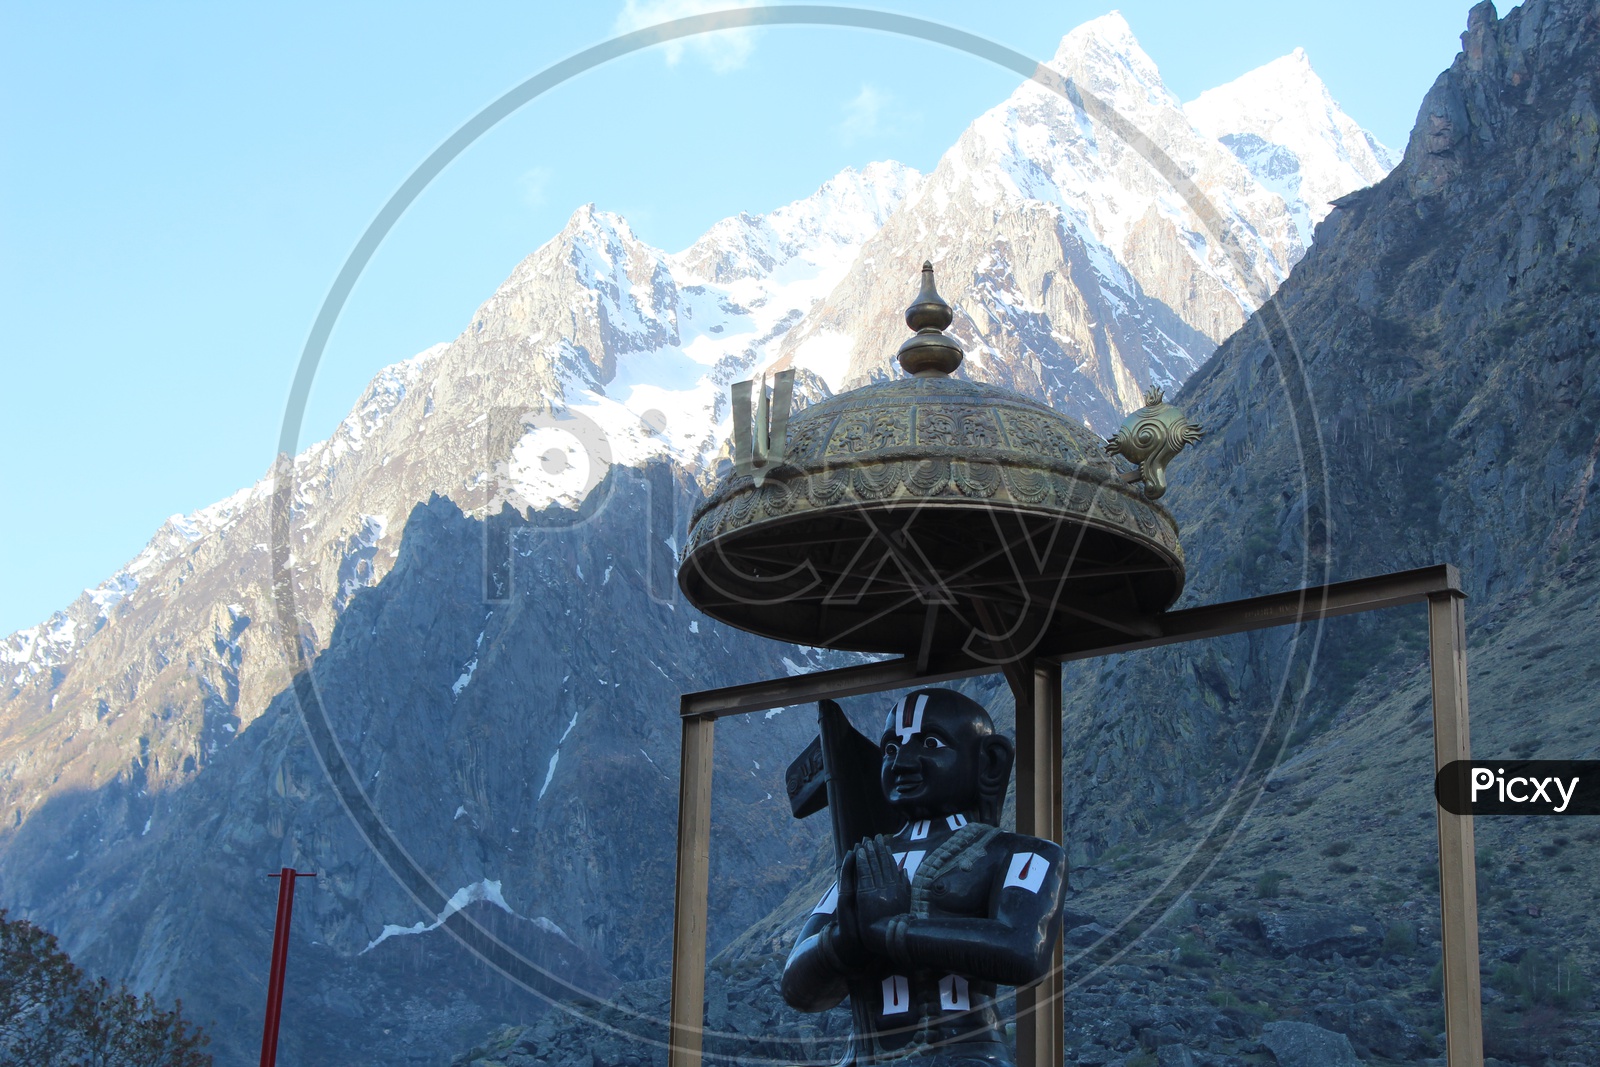 Vamana statue and Himalayas